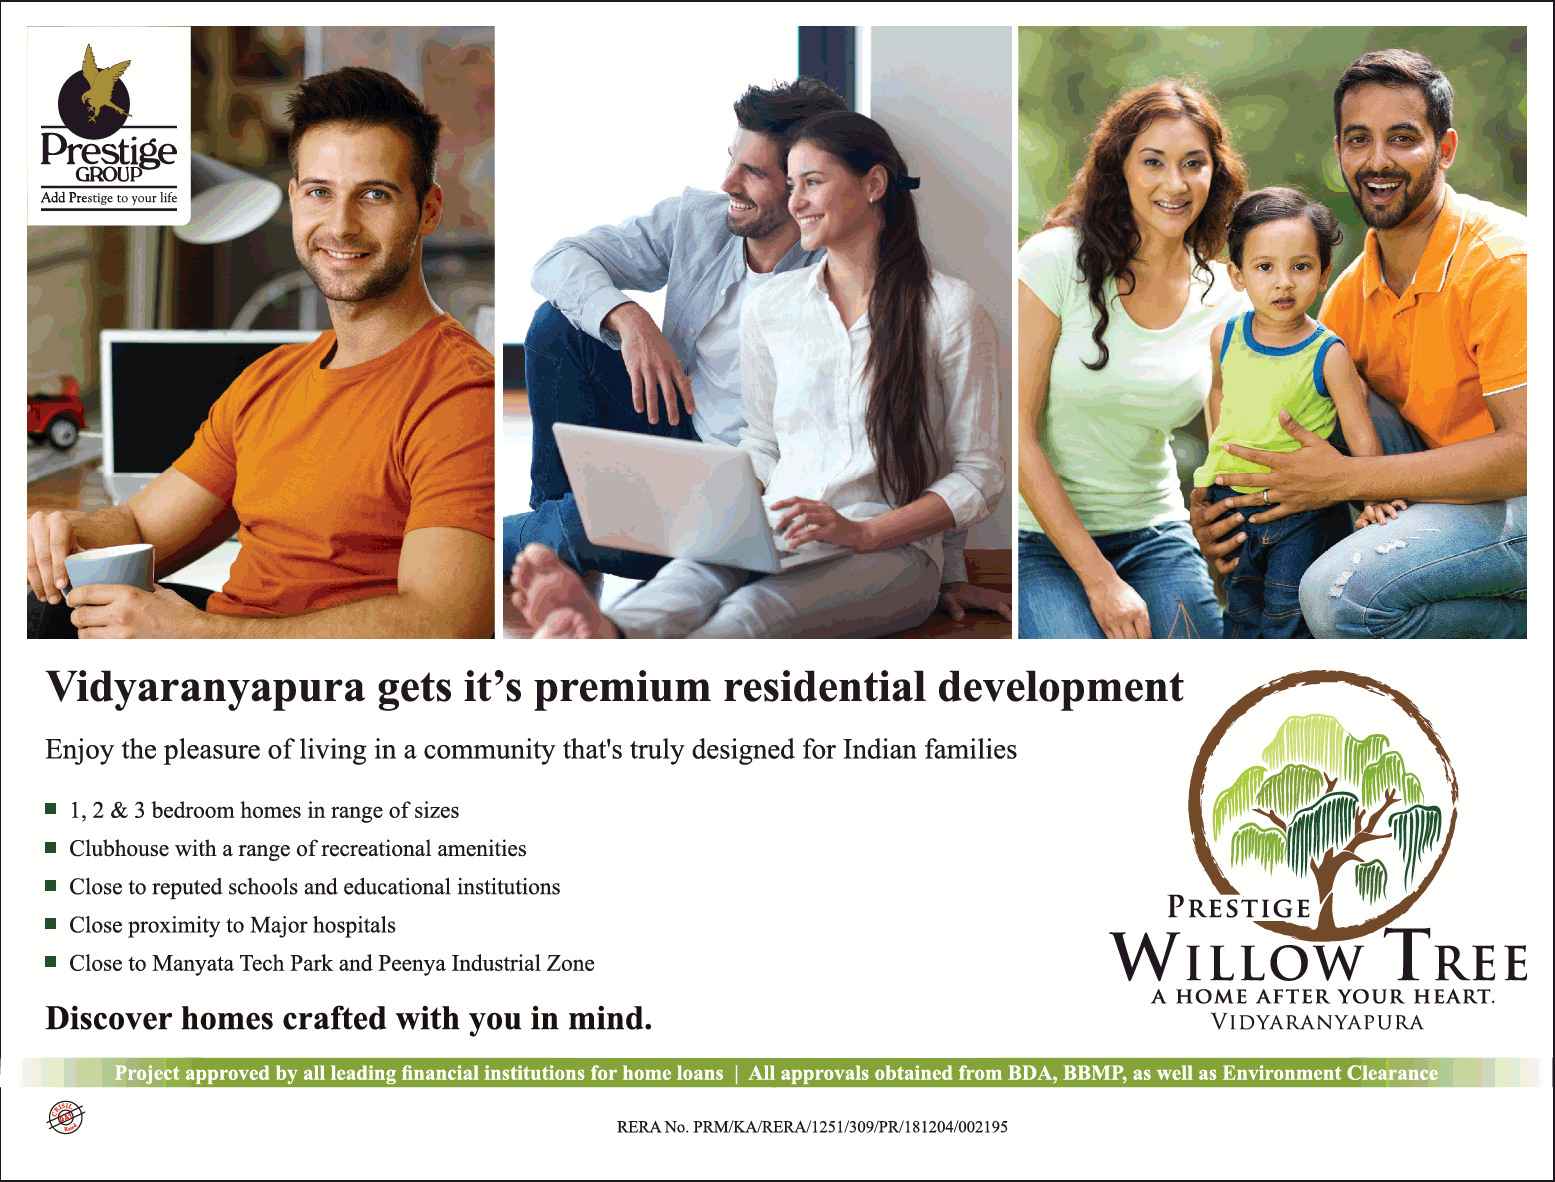 Book 1/2/3 premium homes at Prestige Willow Tree in Vidyaranyapura, Bangalore Update